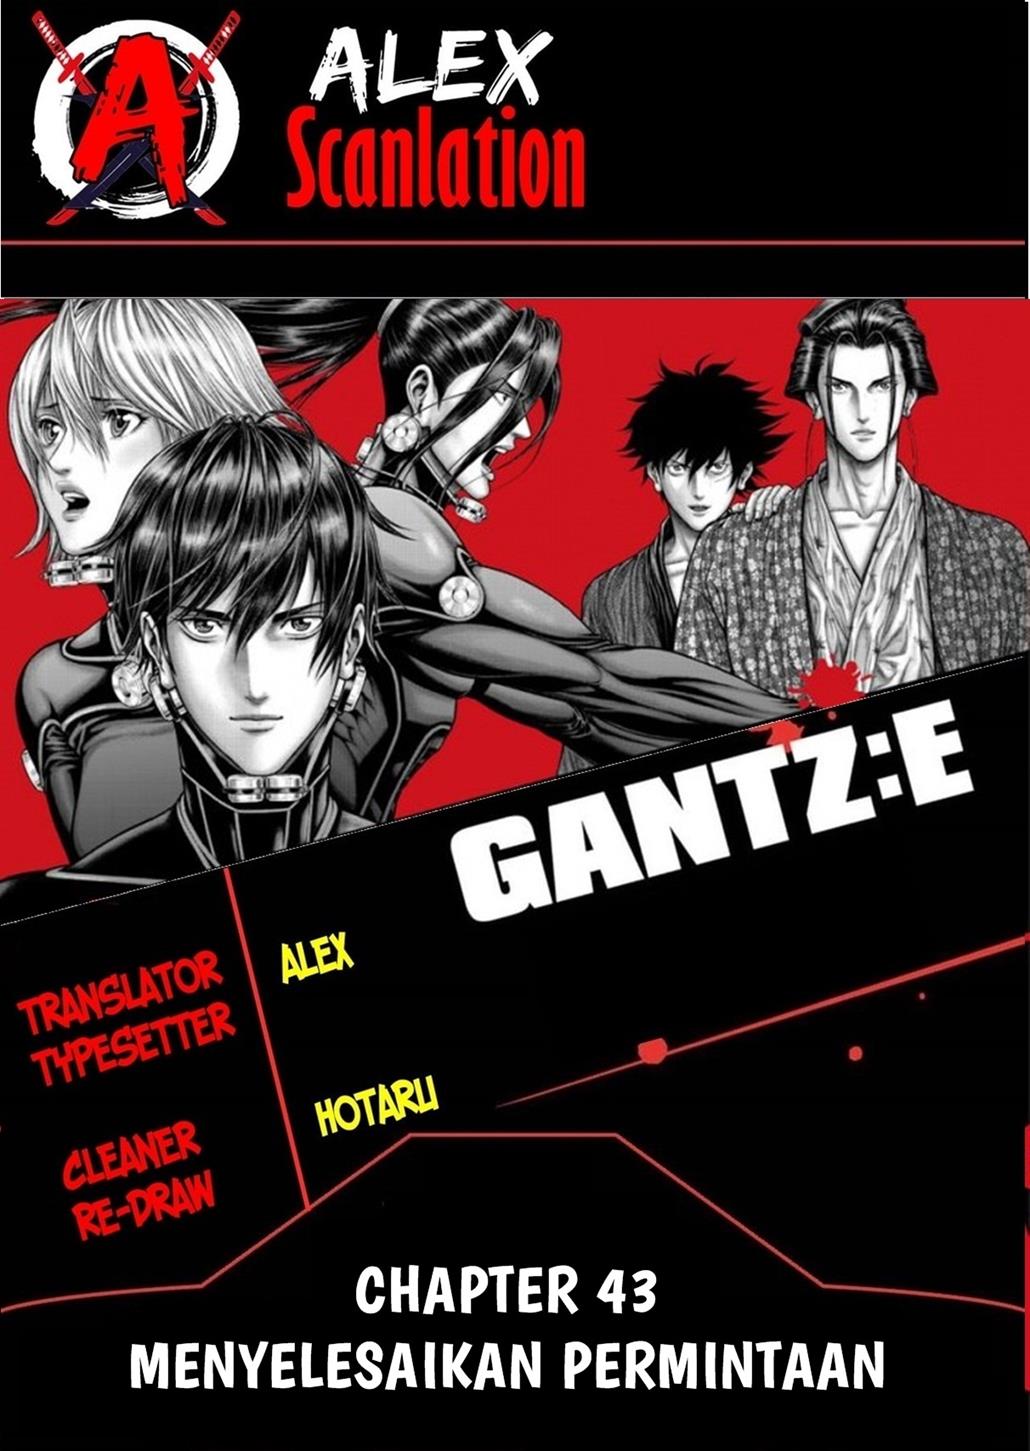 Gantz:E Chapter 43